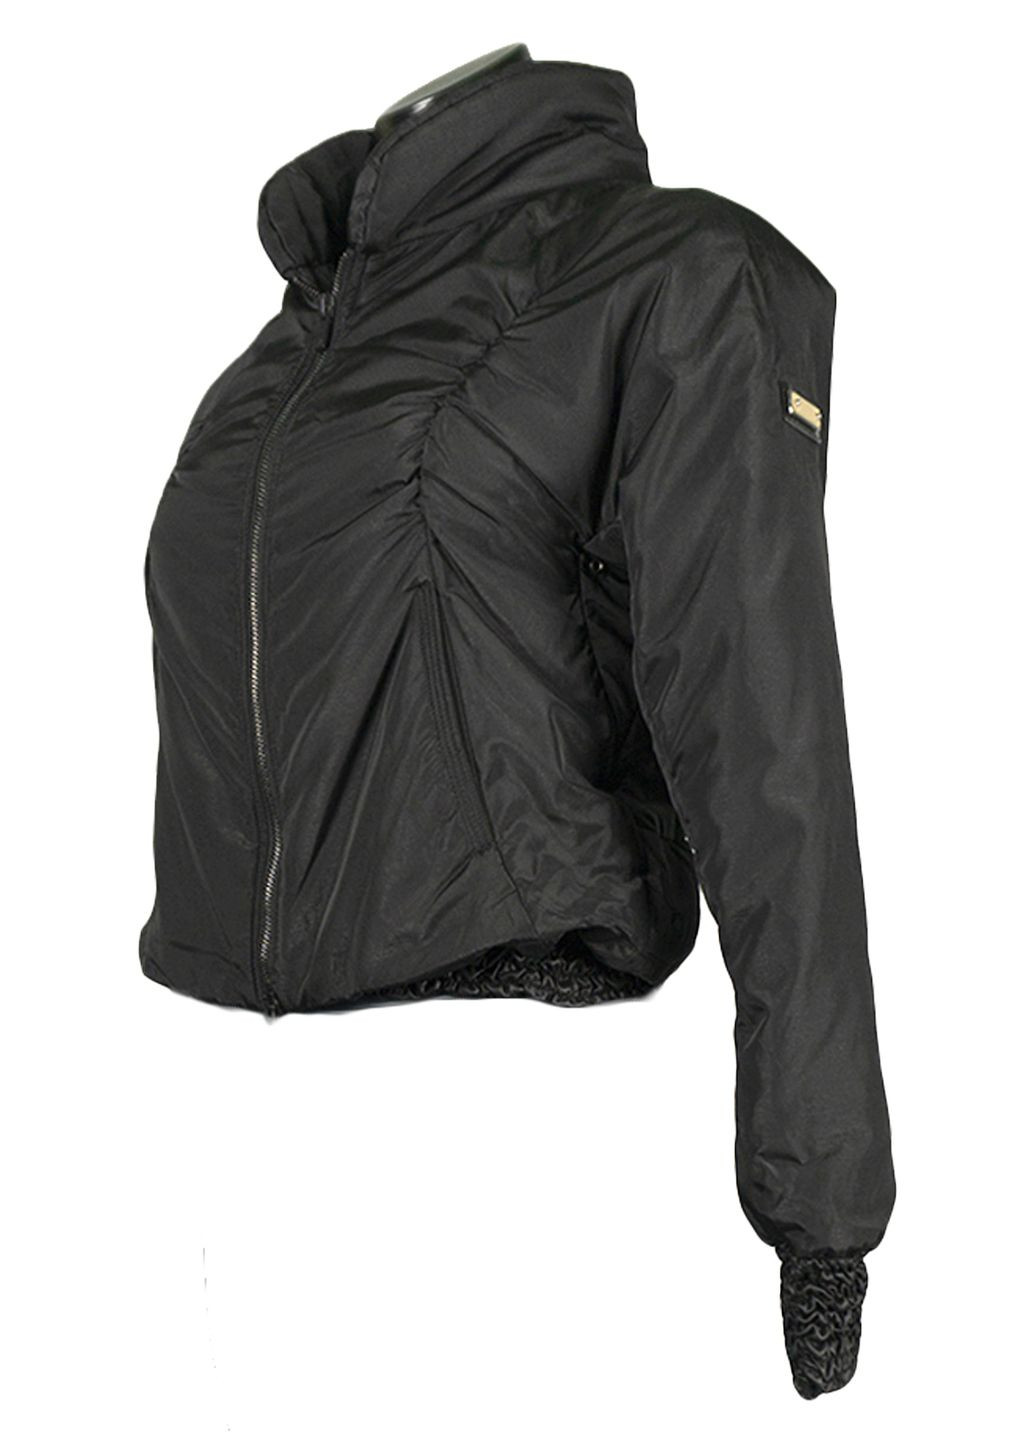 Черная демисезонная женская демисезонная куртка двойка fv-111708-2 черный Forza Viva